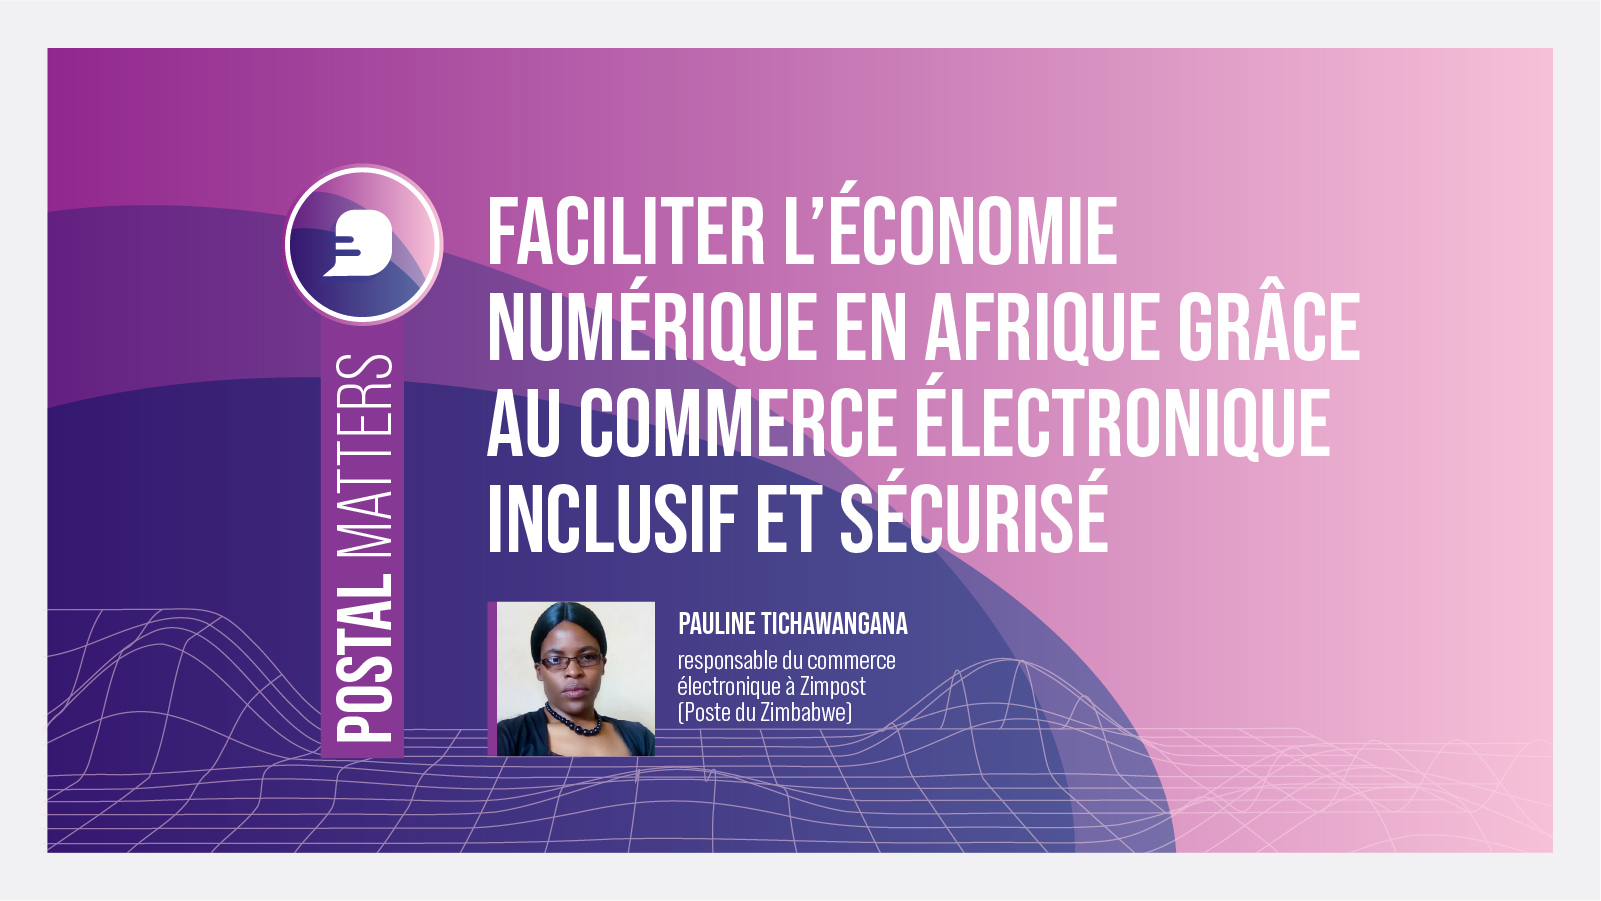 Faciliter l’économie numérique en Afrique grâce au commerce électronique inclusif et sécurisé